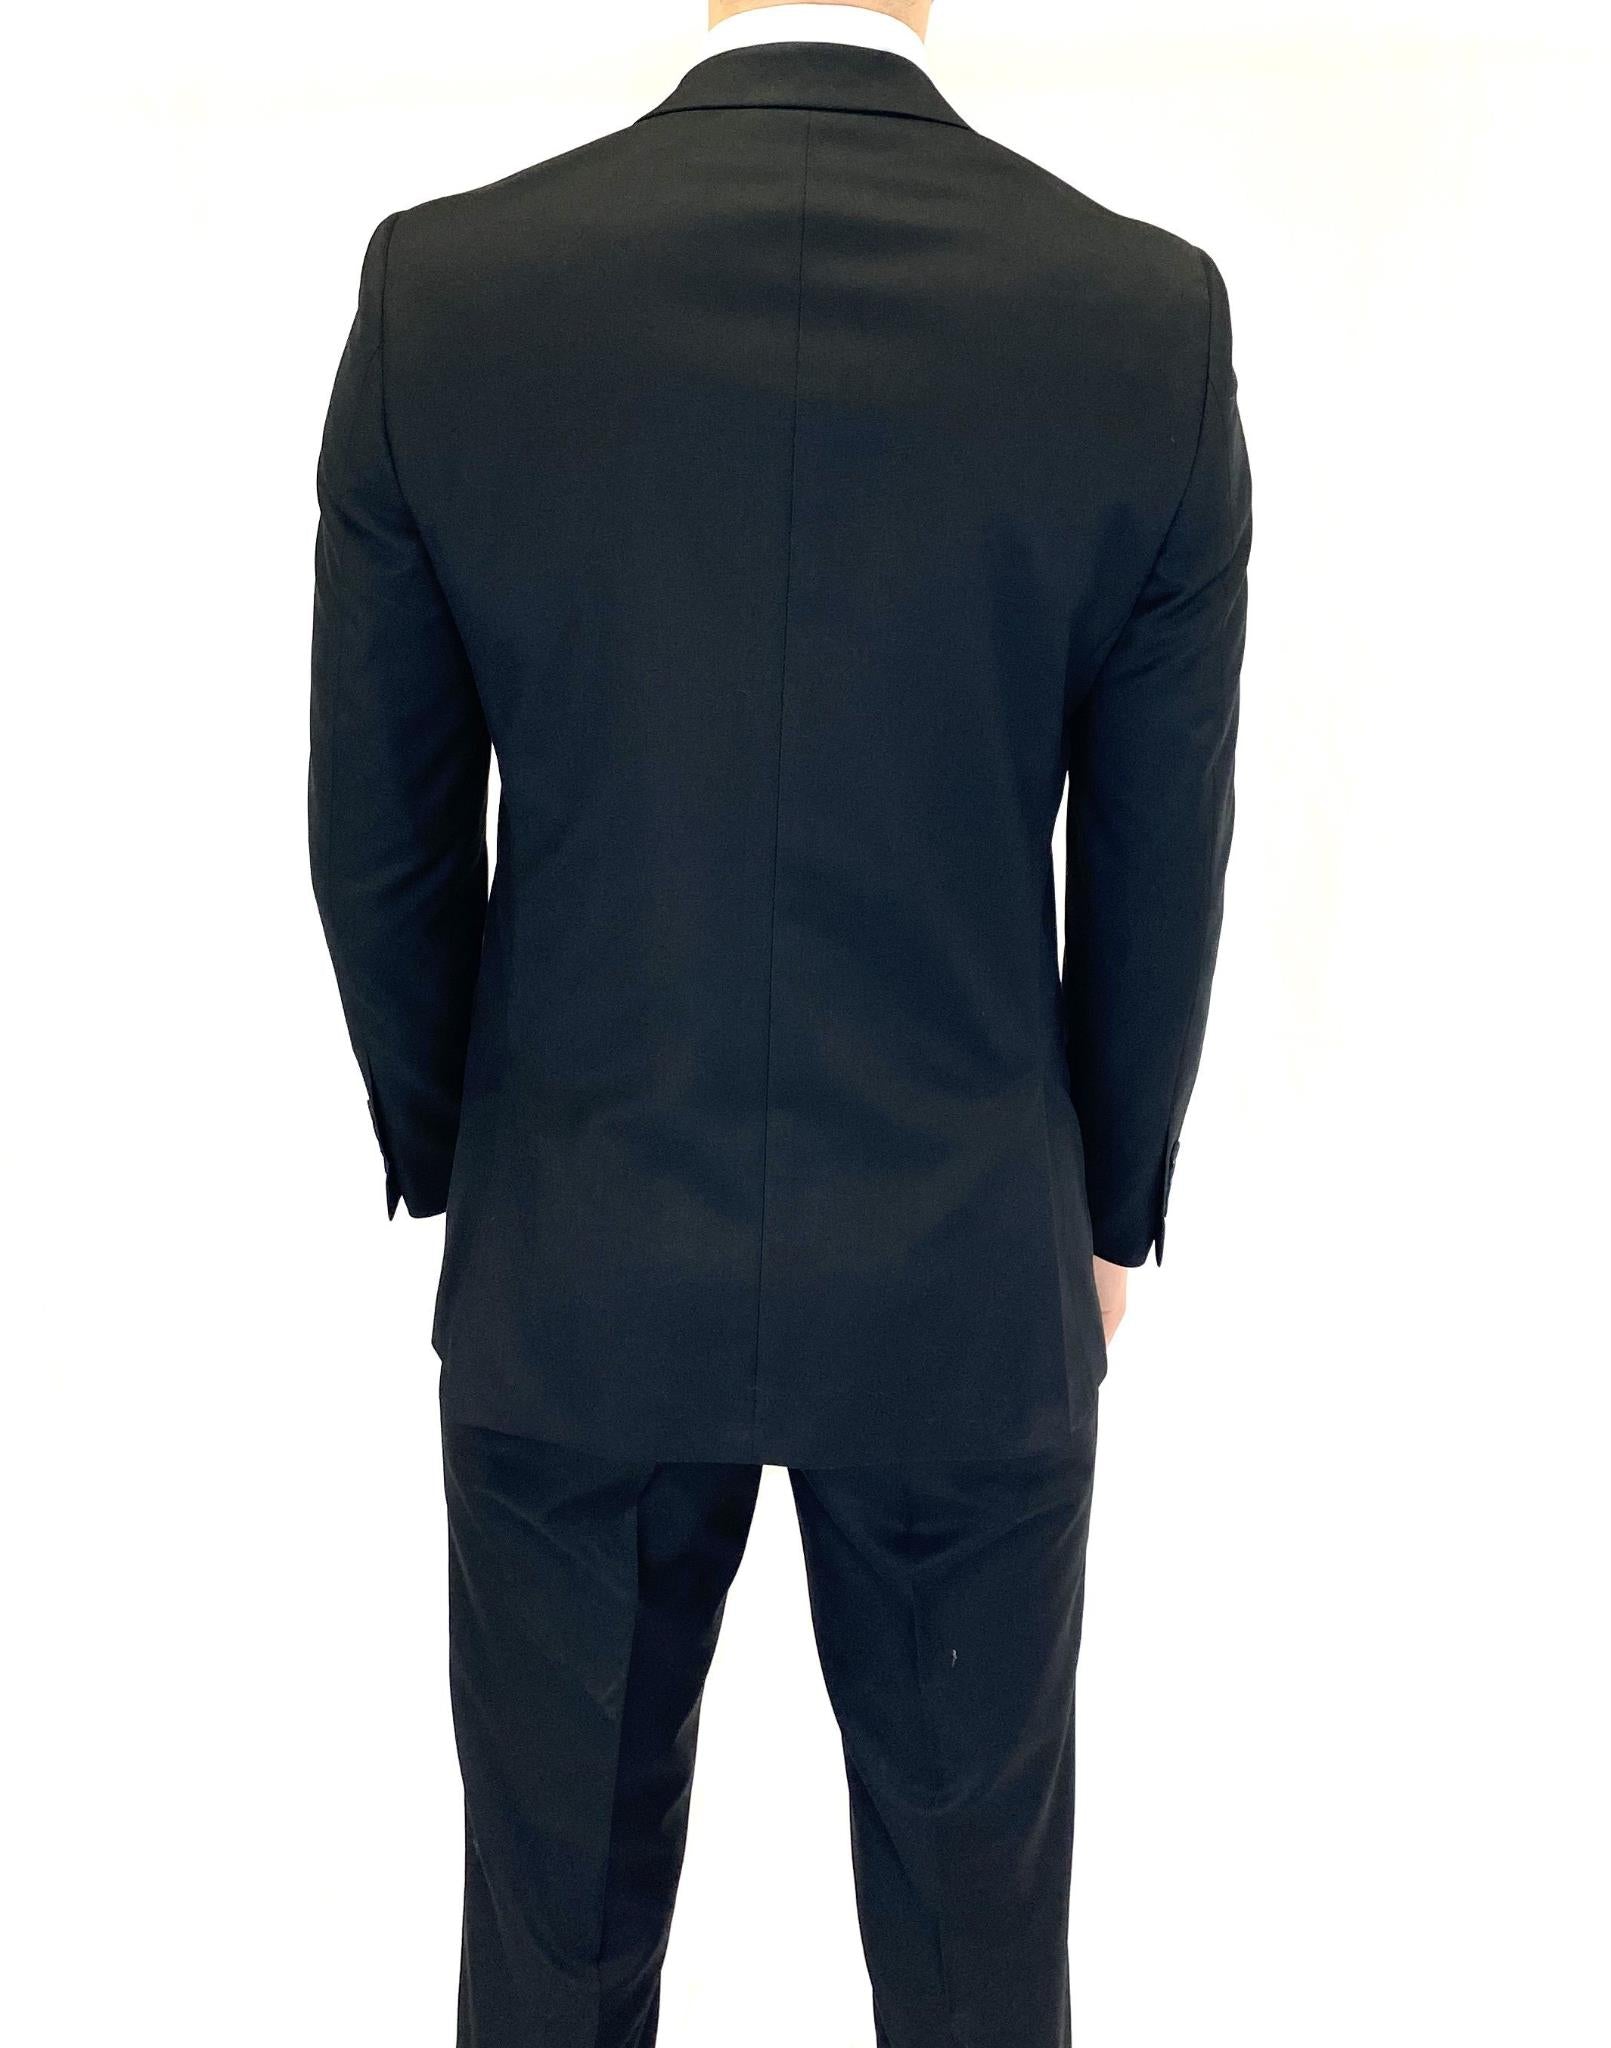 Renoir Slim Fit Suit in Black